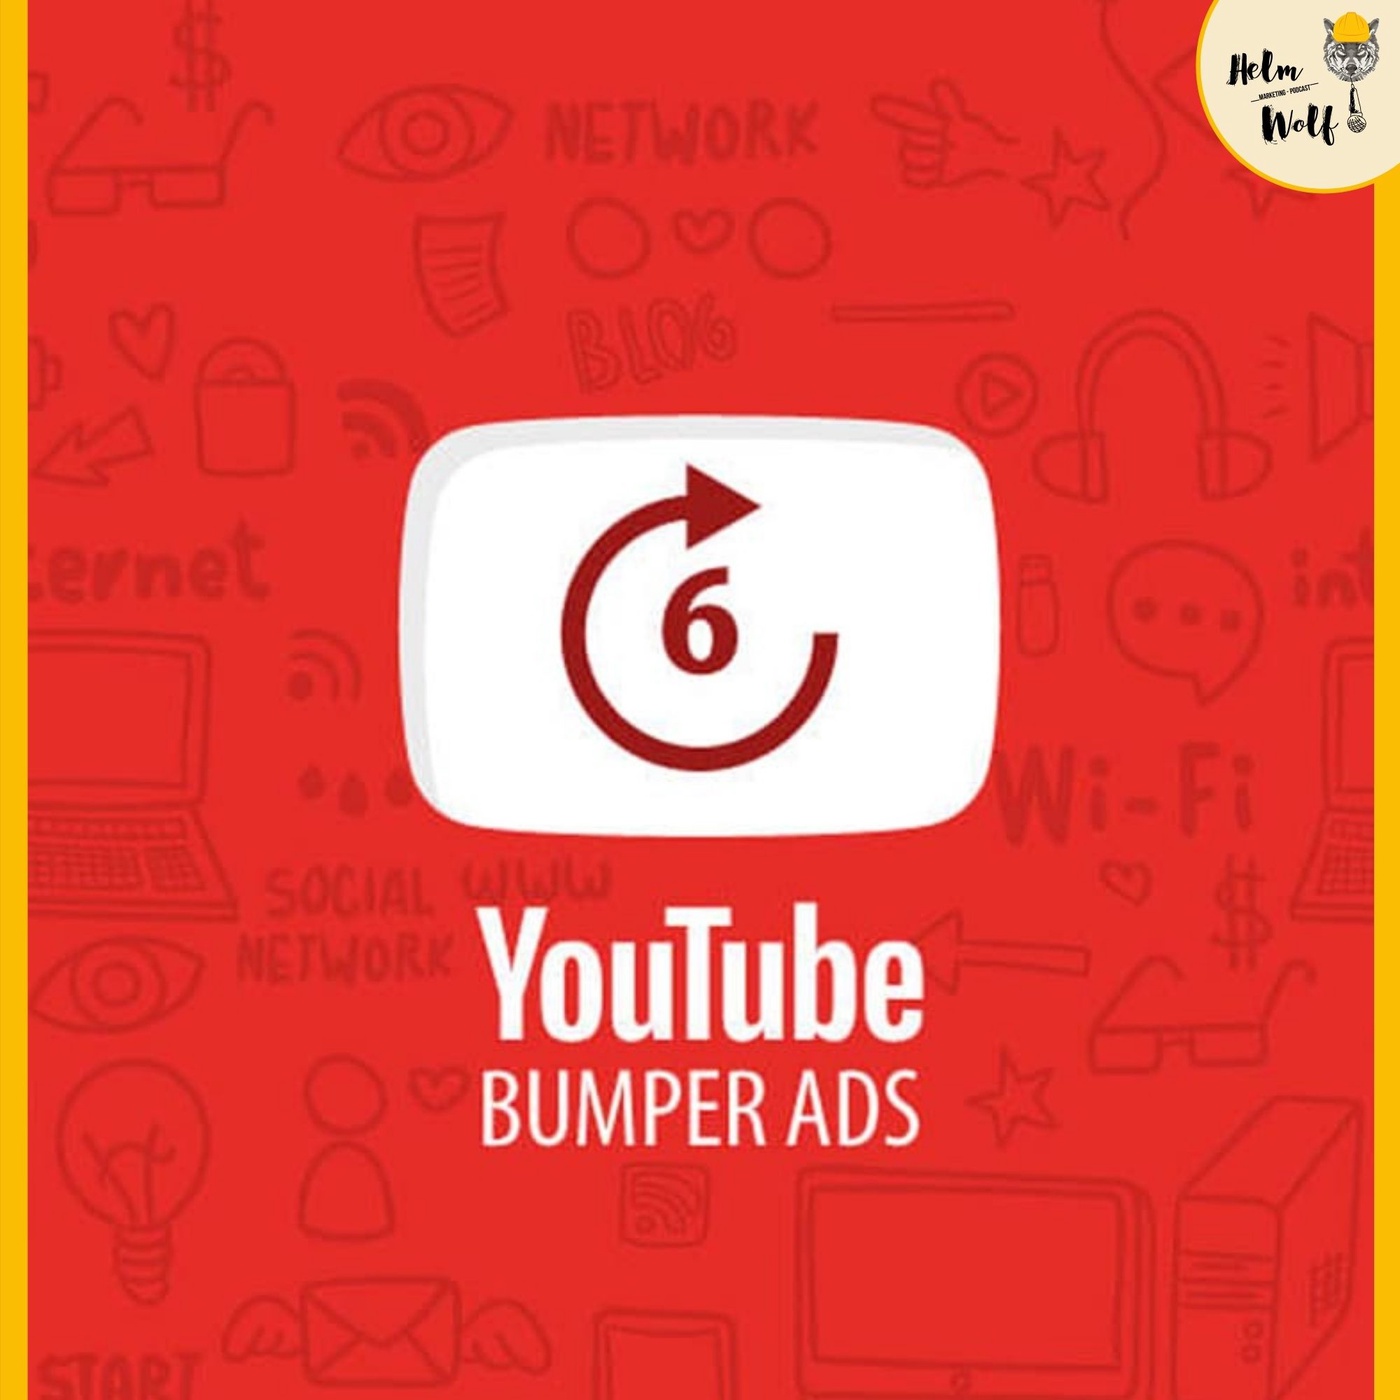 Bumper Ads - 6 Sekunden die überzeugen müssen! | #121 Helmwolf Marketing Podcast